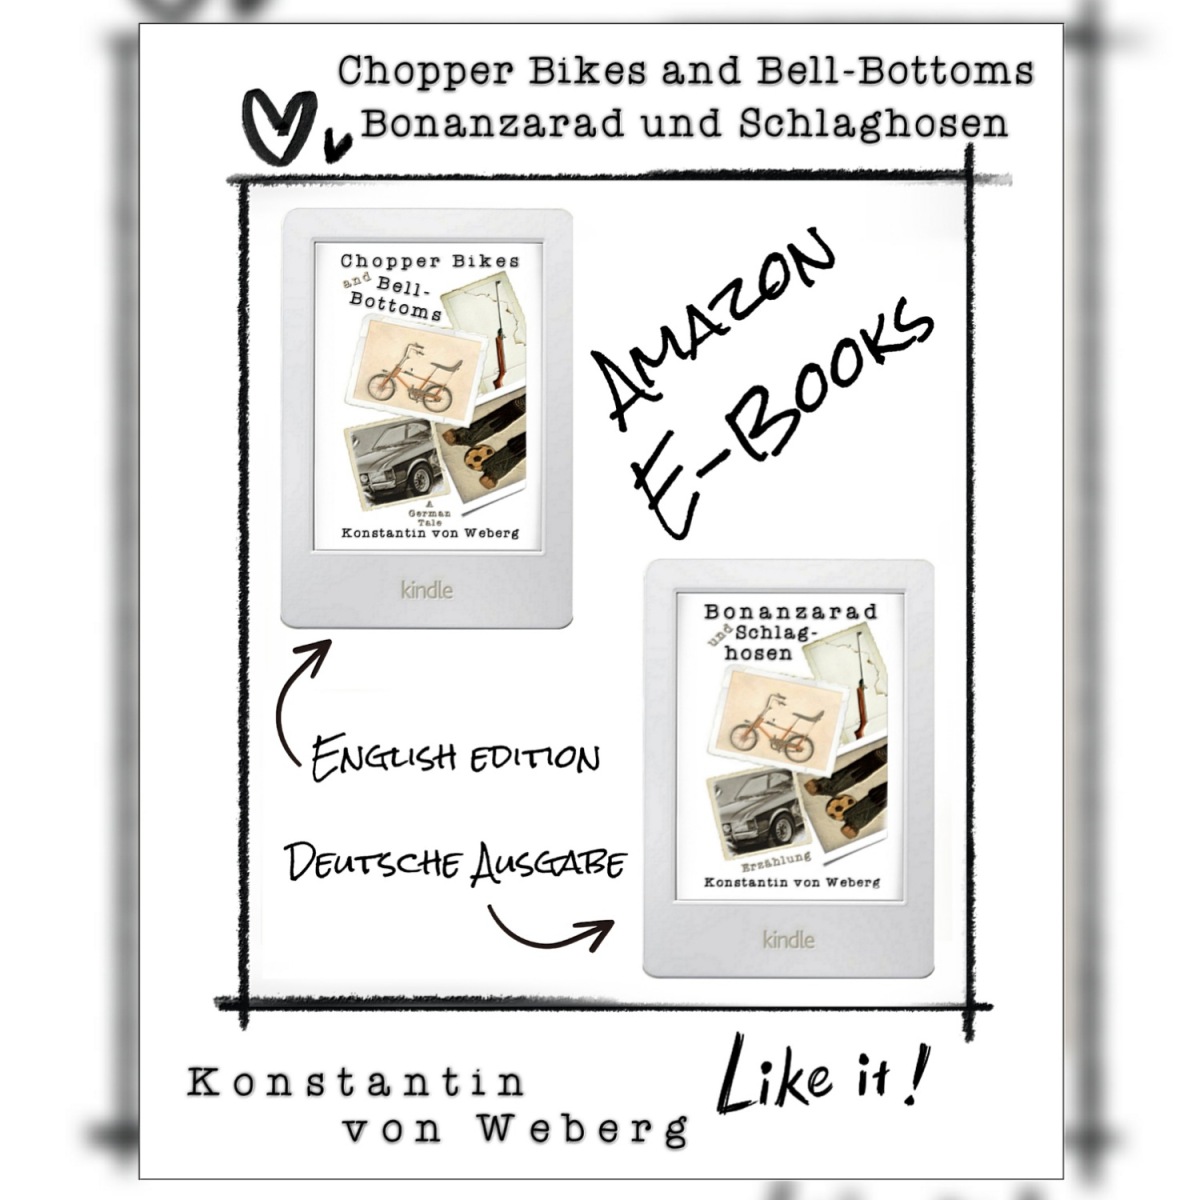 Novel ‚Chopper Bikes and Bell-Bottoms‘ • Roman ‚Bonanzarad und Schlaghosen‘